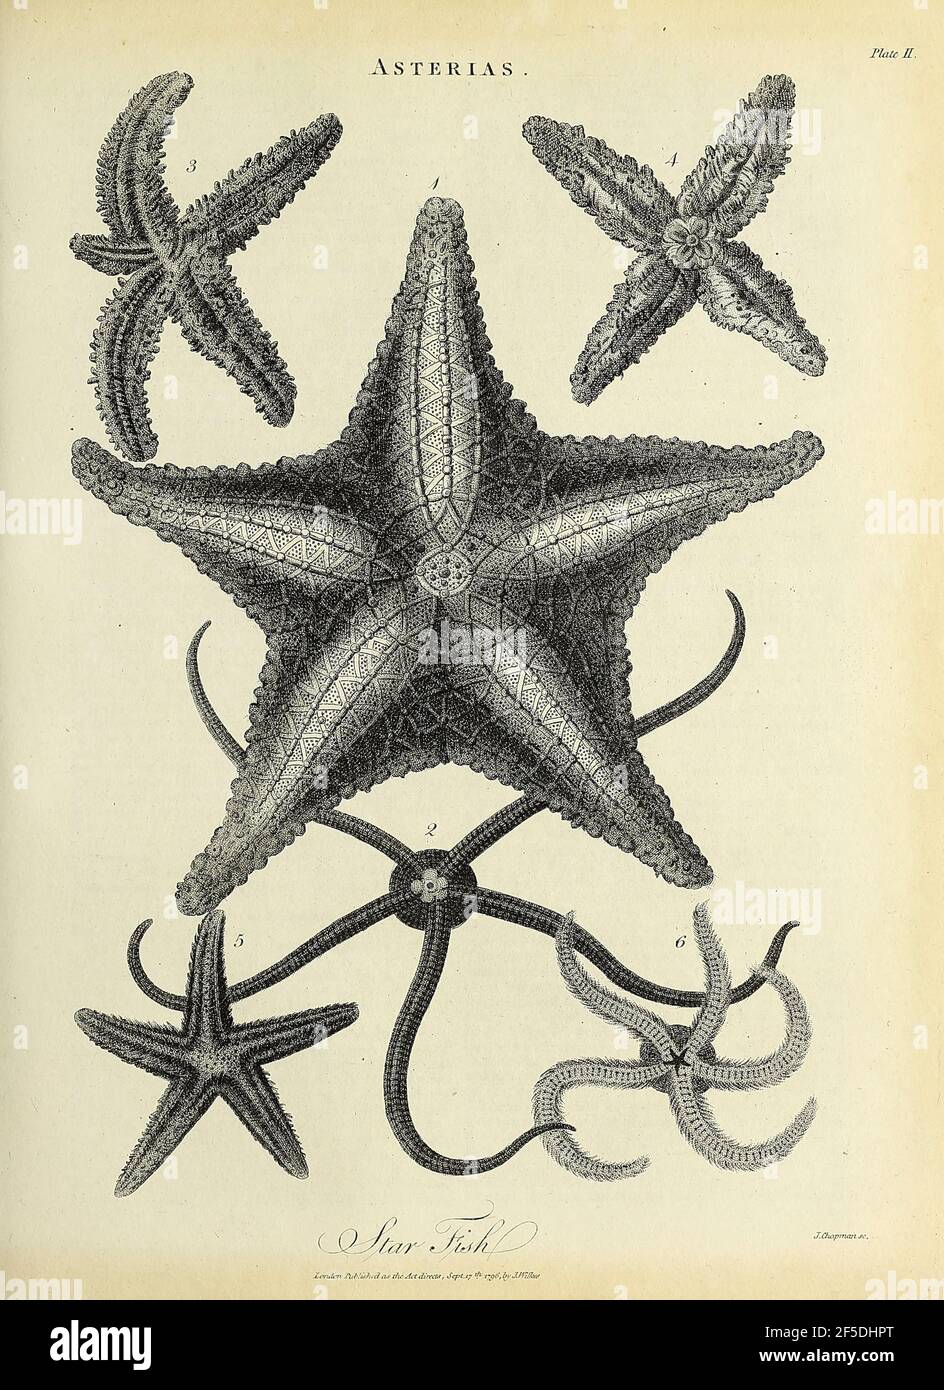 Asterias es un género de estrellas de mar perteneciente a la familia  Asteriidae. Incluye varias de las especies más conocidas de estrellas de mar,  incluyendo el (Atlántico) estrella común, Asterias rubens, y